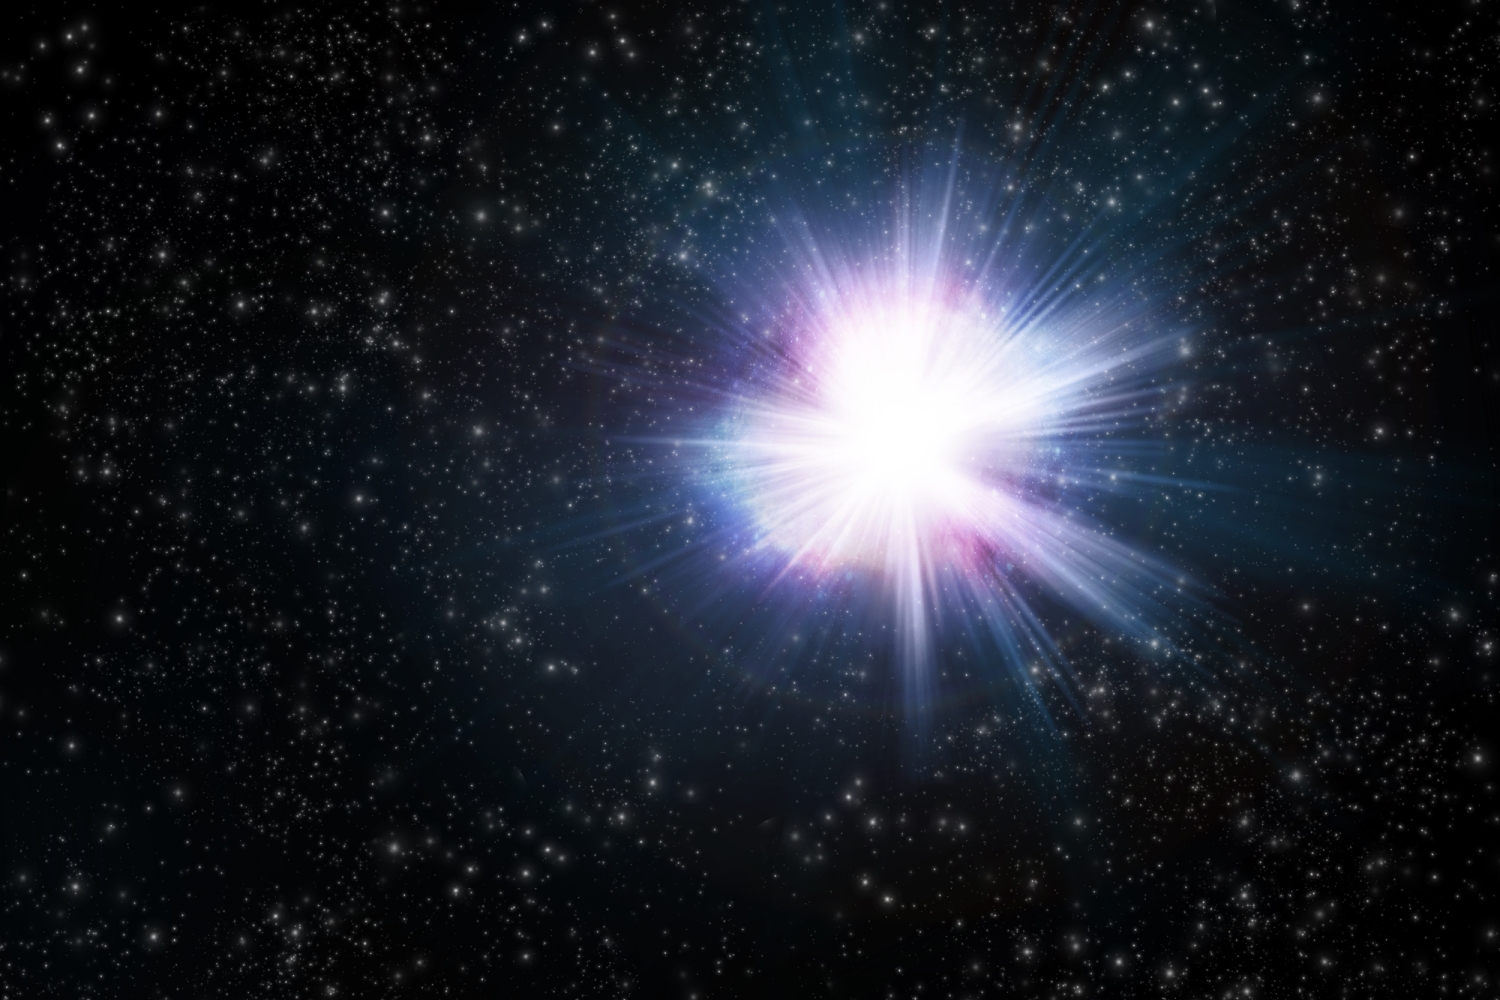 Brzi radio izboji iz spiralne galaksije M 81. Izvor: Depositphotos.com.